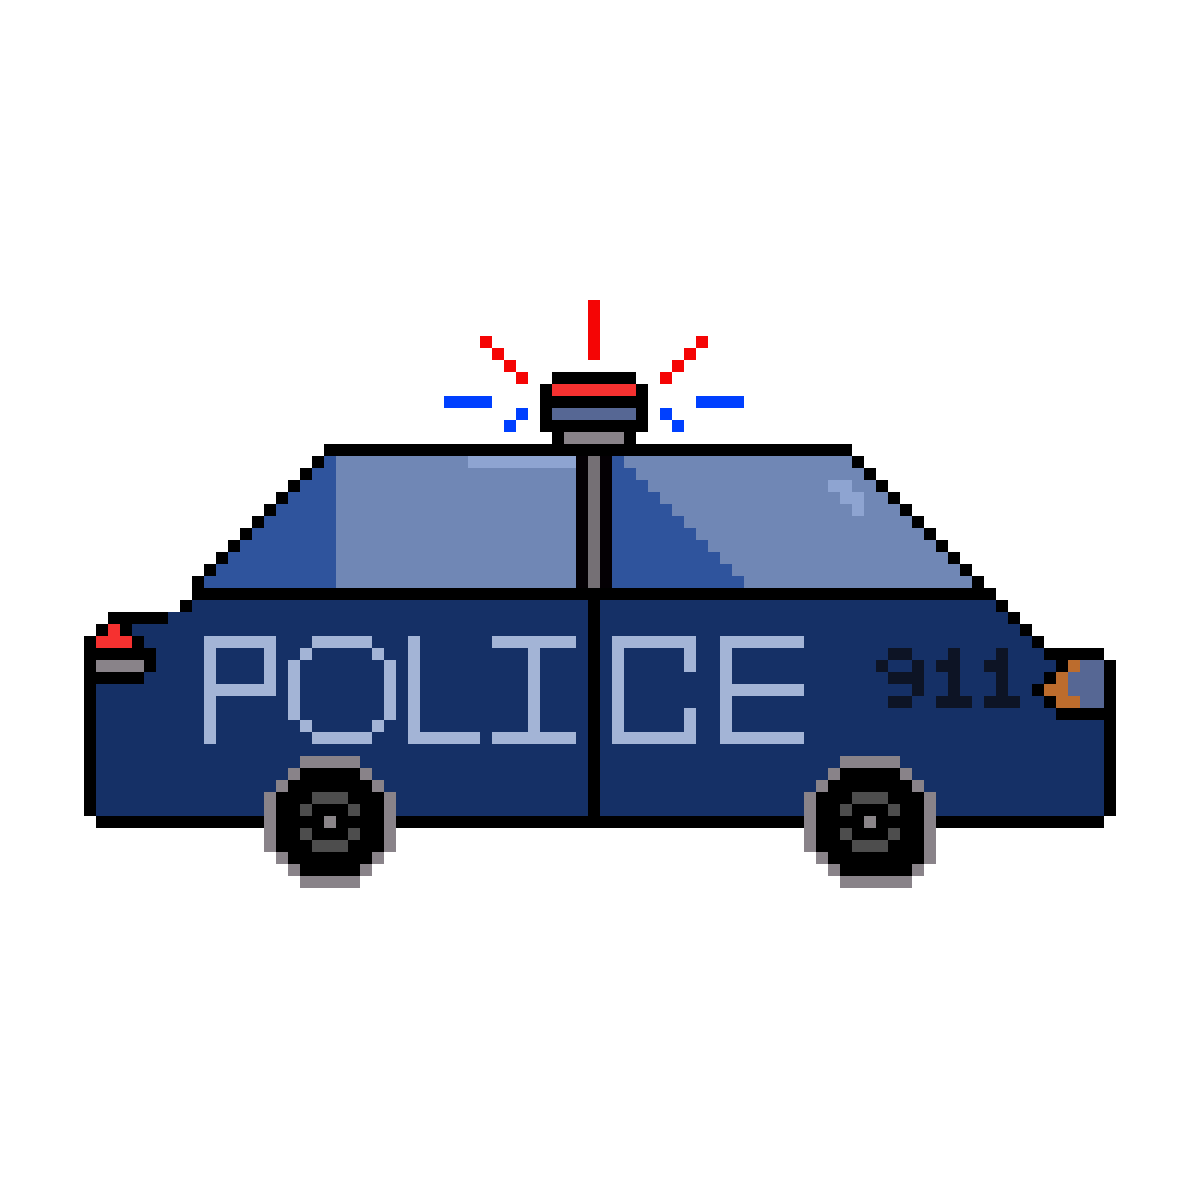 Samochody policyjne na GIF - 90 animowanych GIF pojazdów policyjnych